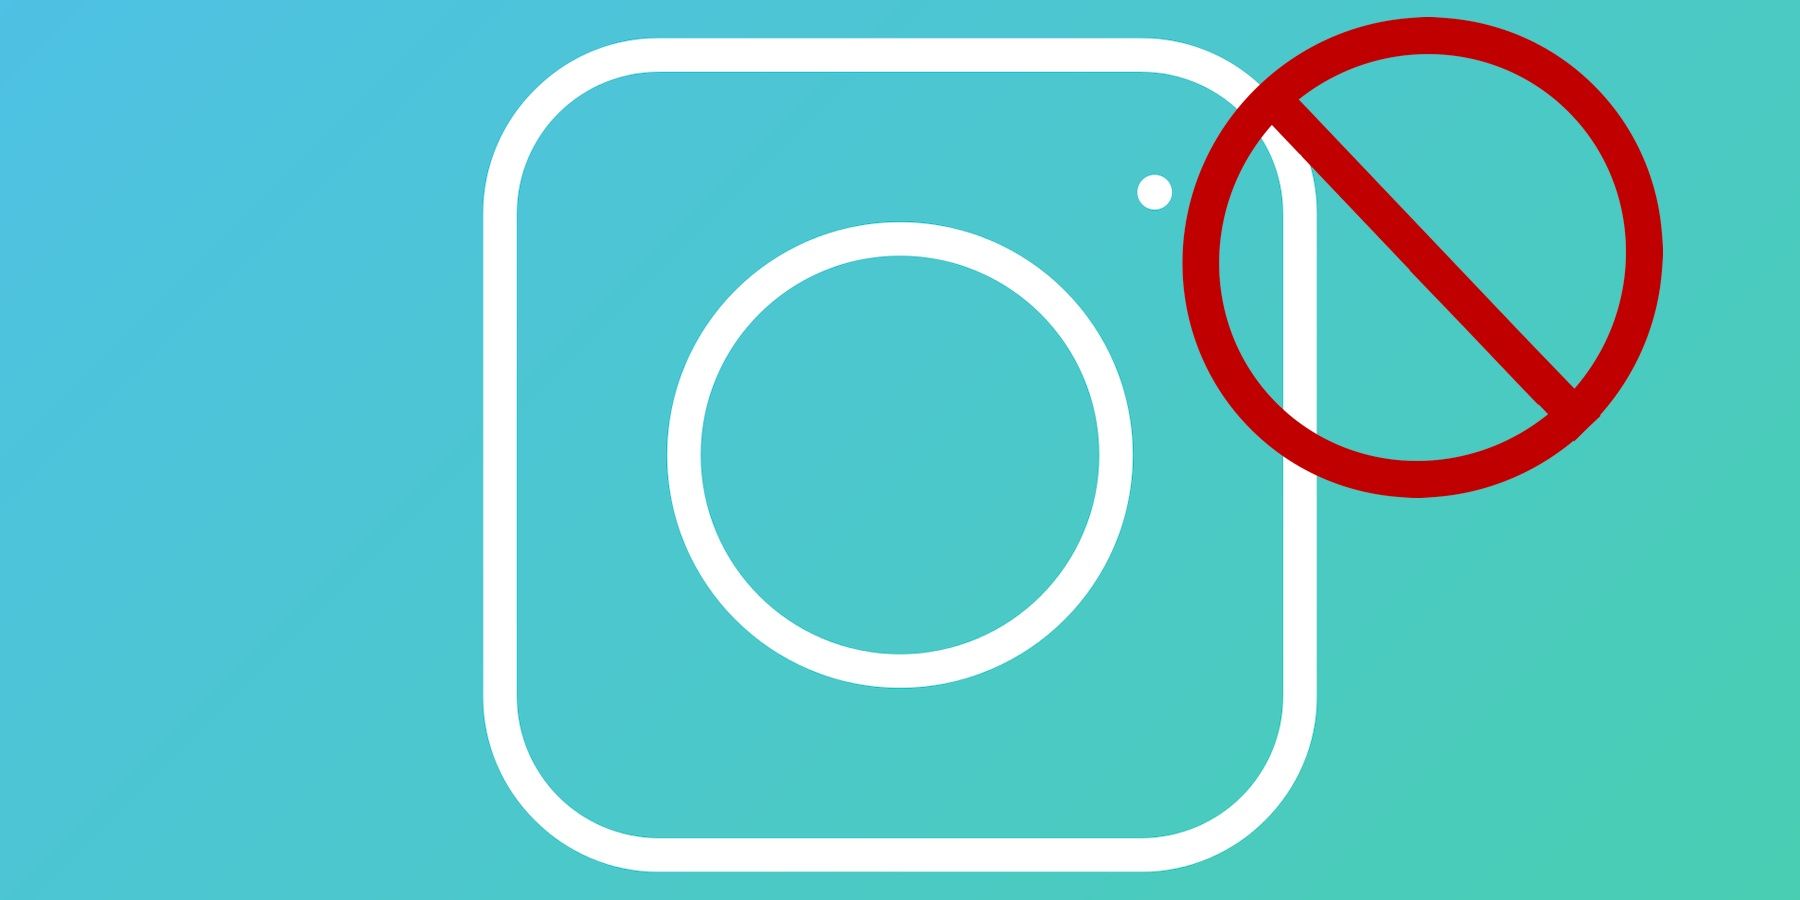 Is Instagram Safe for Kids? An Instagram App Review for Parents | Bark